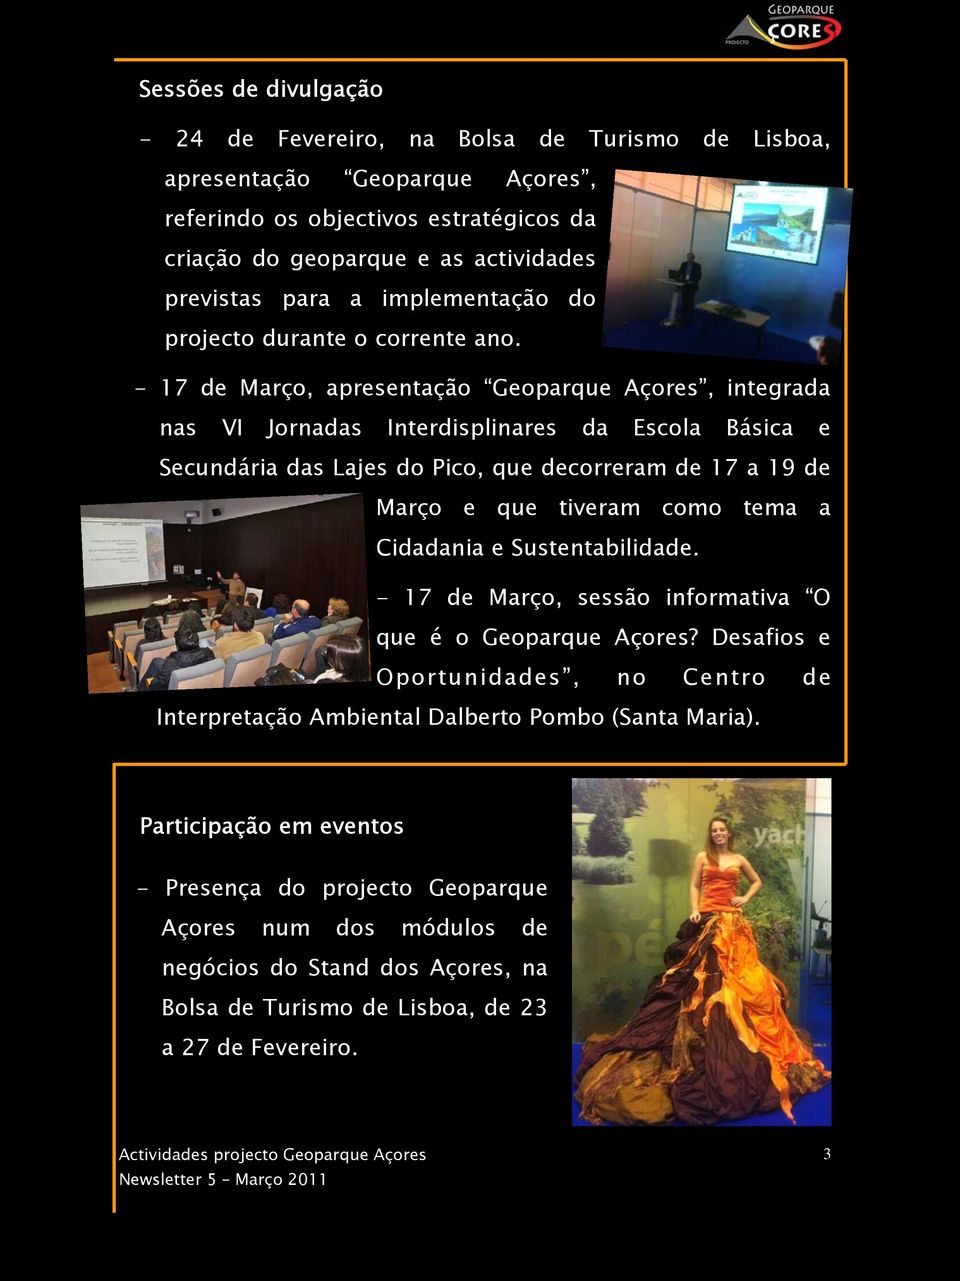 - 17 de Março, apresentação Geoparque Açores, integrada nas VI Jornadas Interdisplinares da Escola Básica e Secundária das Lajes do Pico, que decorreram de 17 a 19 de Março e que tiveram como tema a